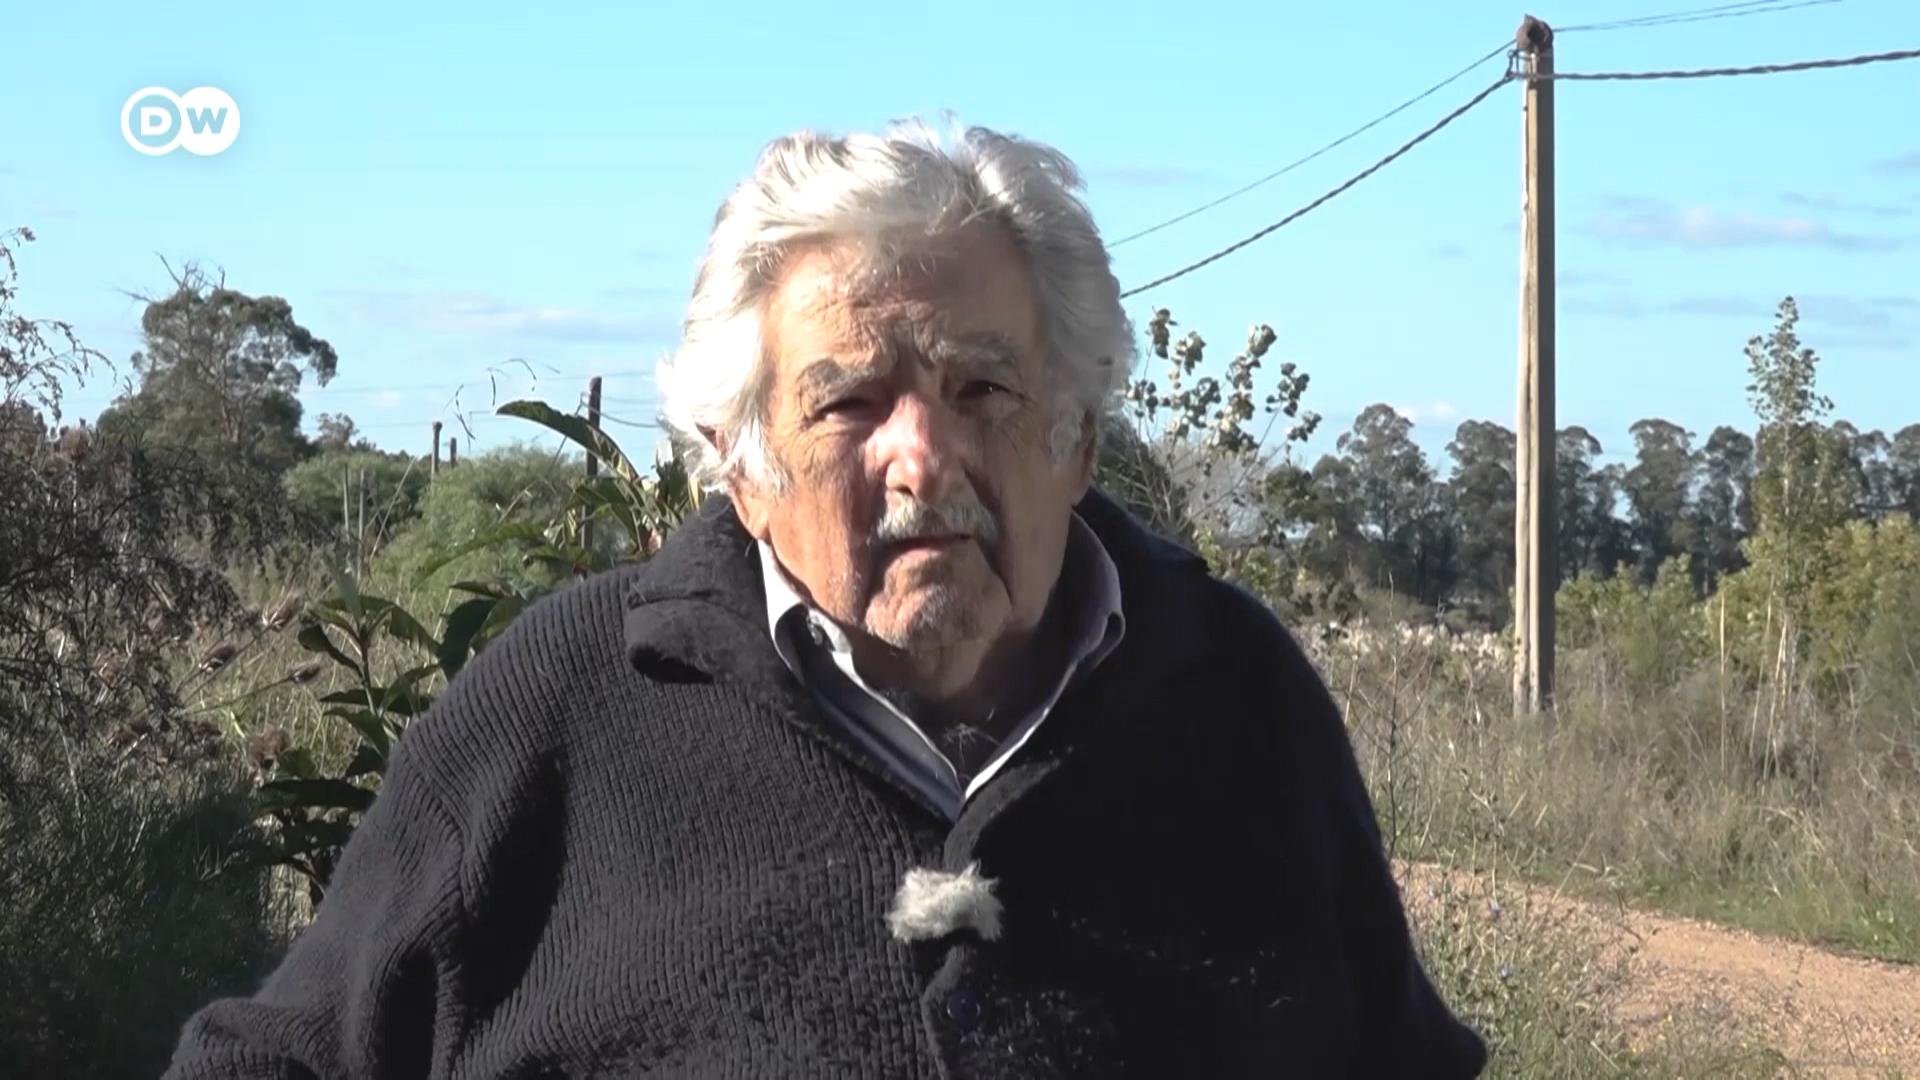 El mundo cayó de nuevo en la enfermedad del nacionalismo pues no cerró bien la herida de la Guerra Fría, dice Mujica.